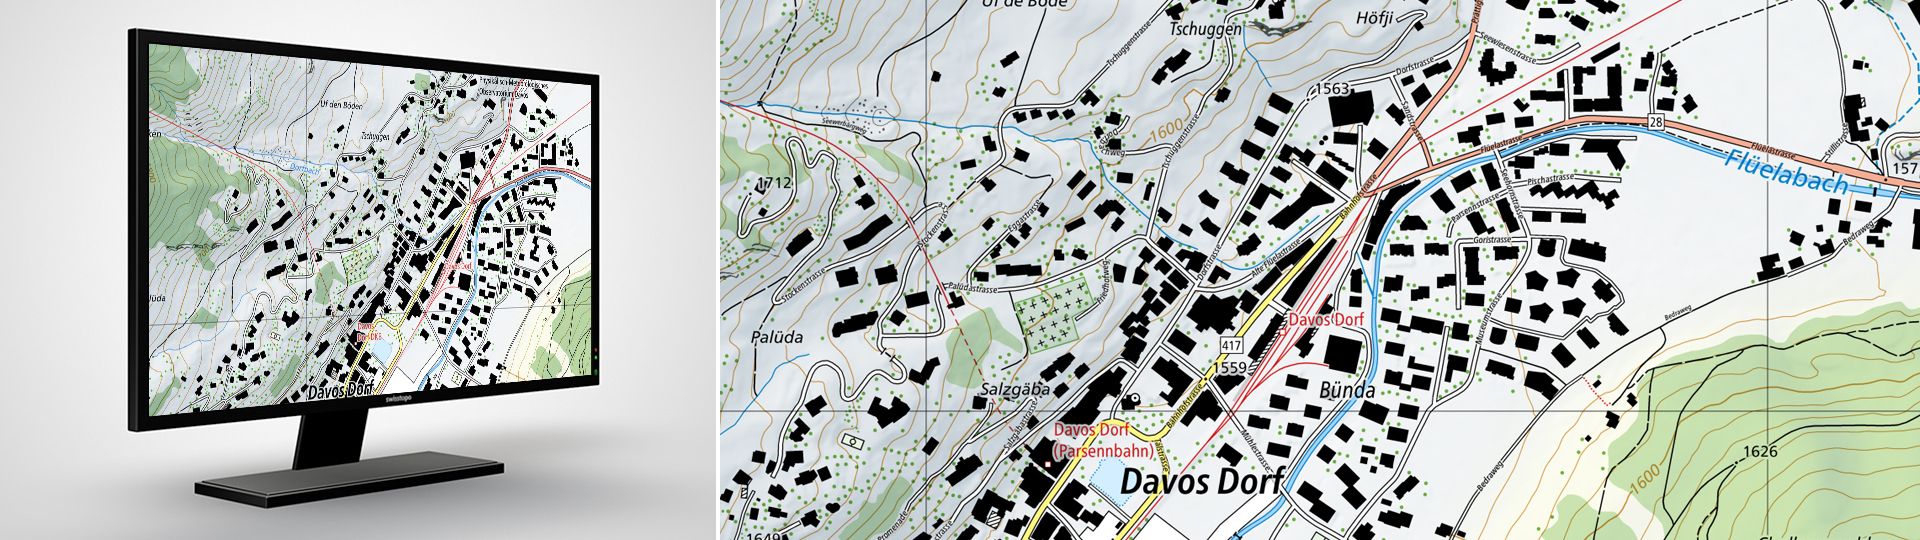 Swiss Map Raster 10: les cartes nationales numériques de la Suisse au 1:10 000 en format raster